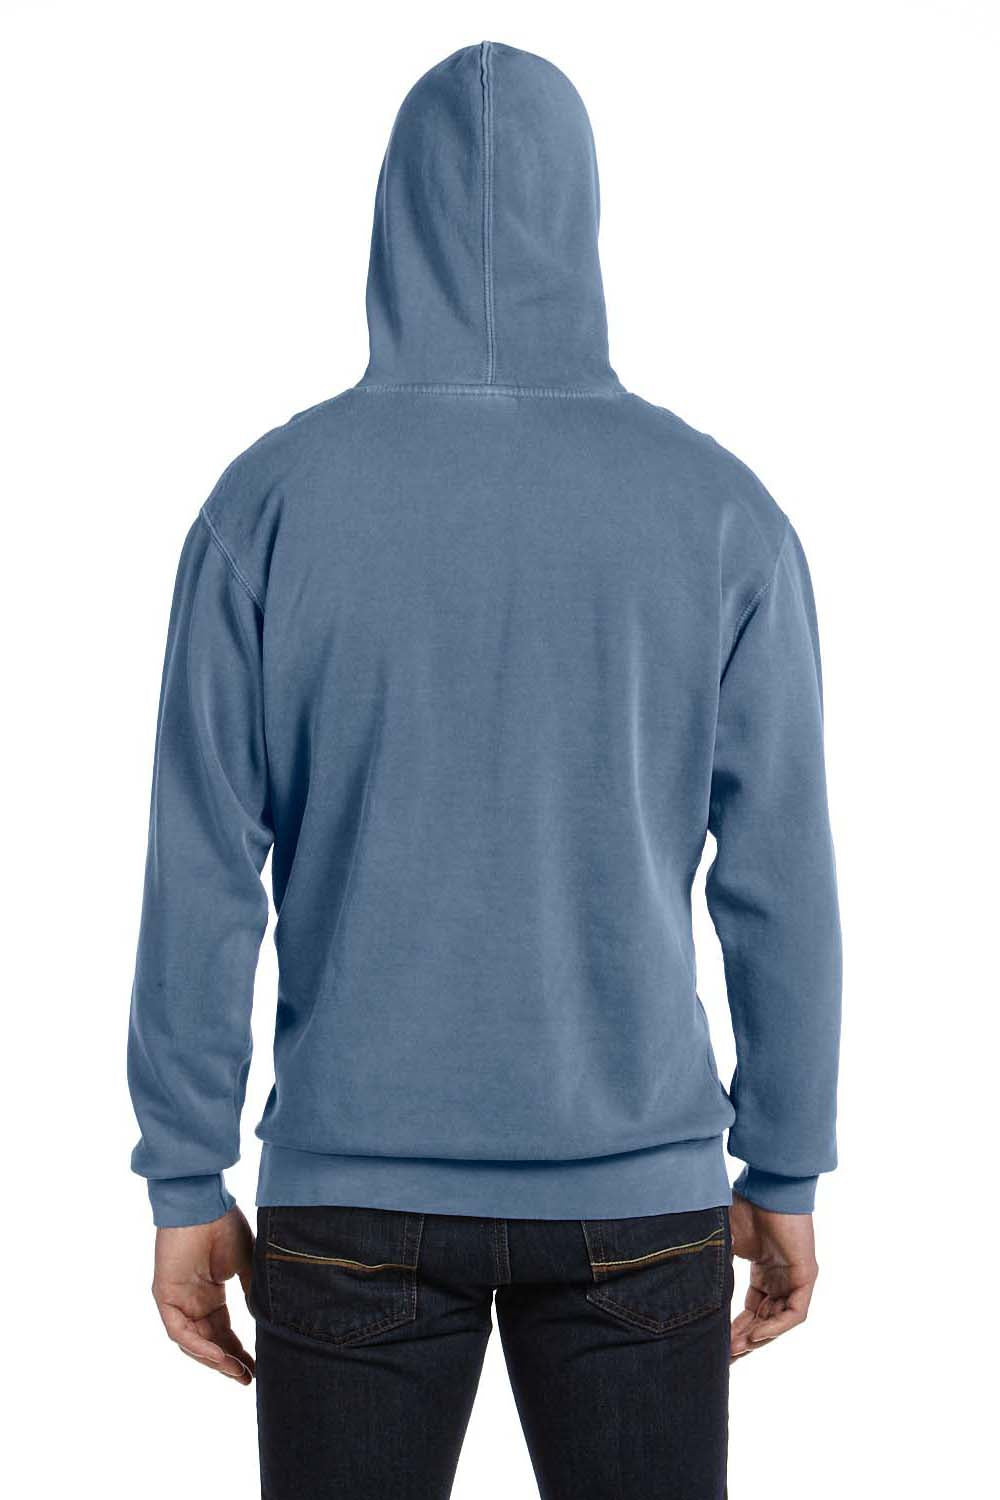 Comfort Colors 1567 Mens Hooded Sweatshirt Hoodie Blue Jean Back